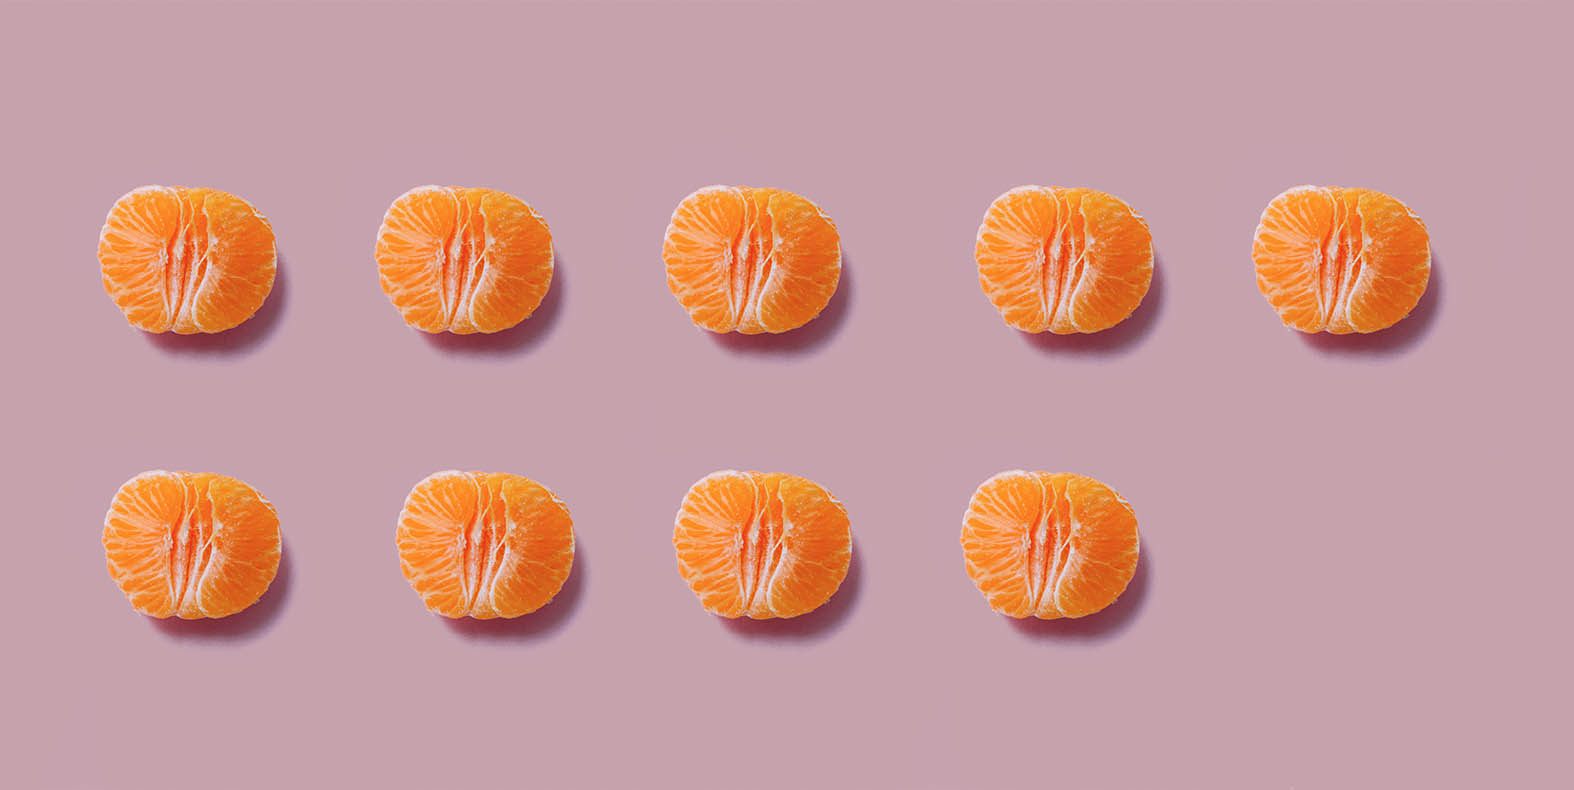 Queued display of oranges